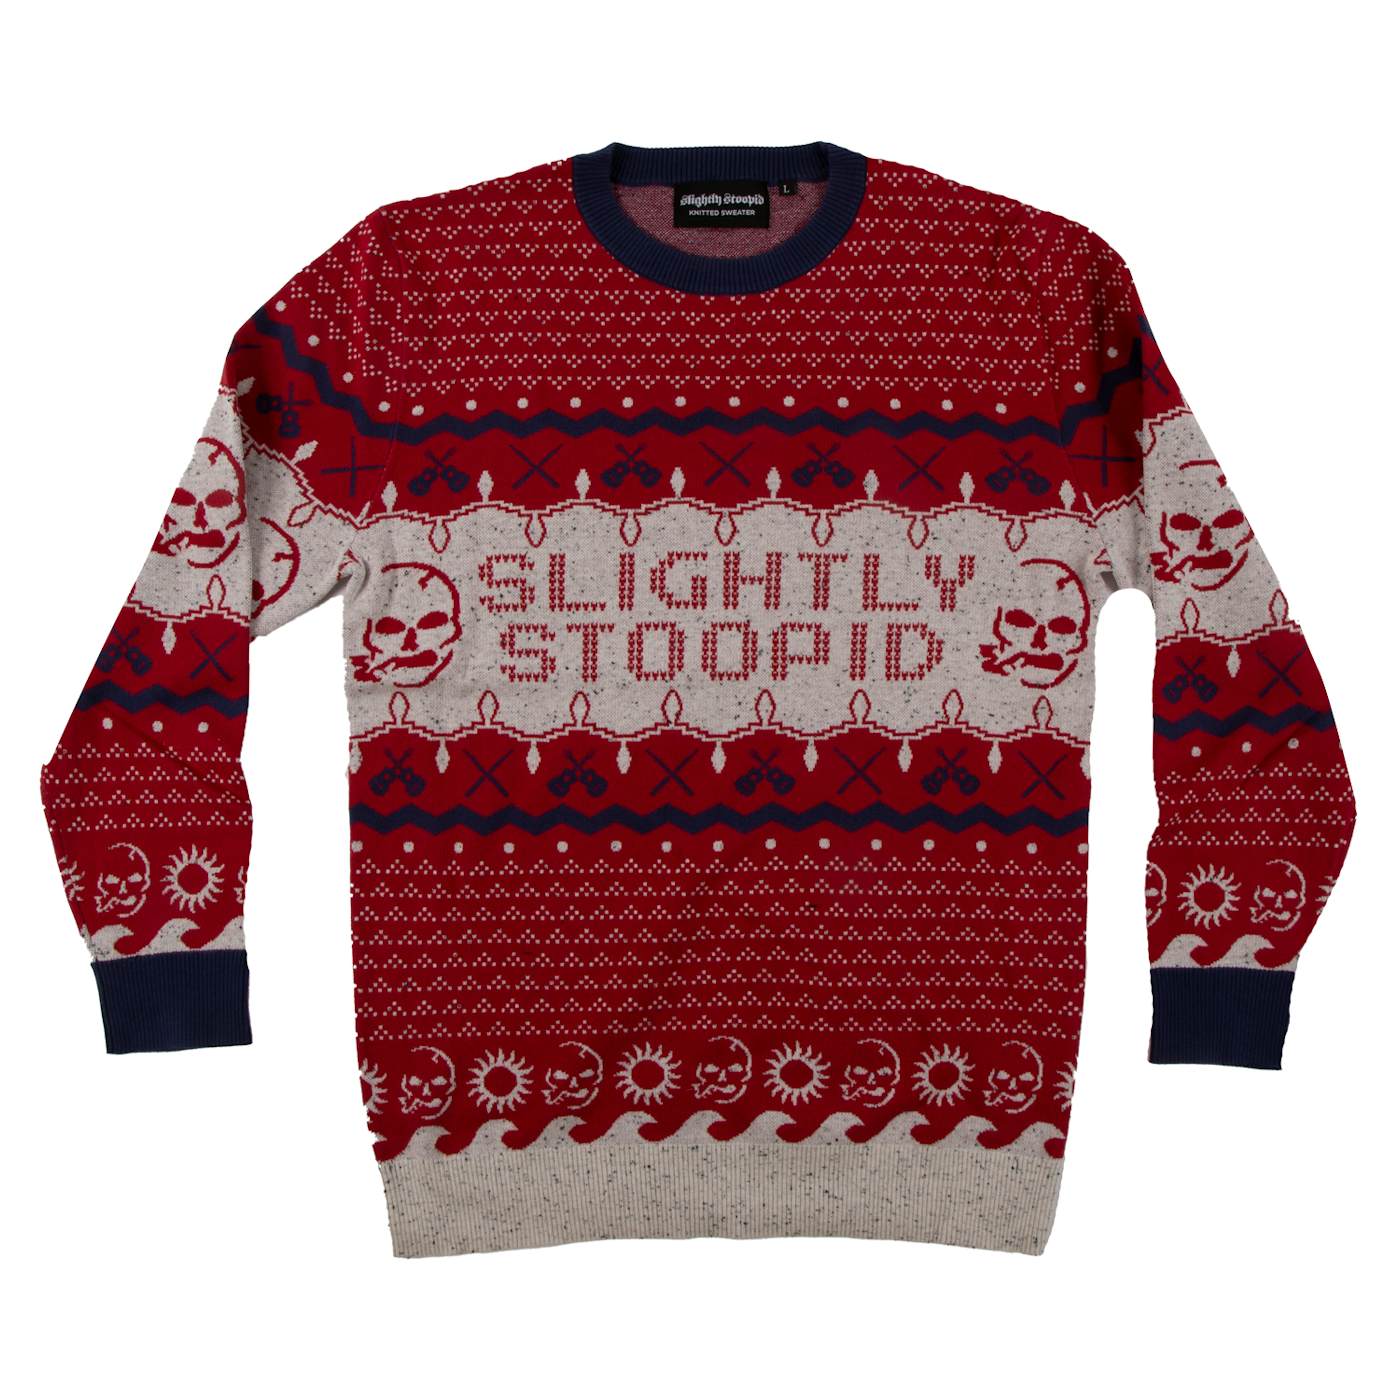 Slightly Stoopid Holiday Sweater